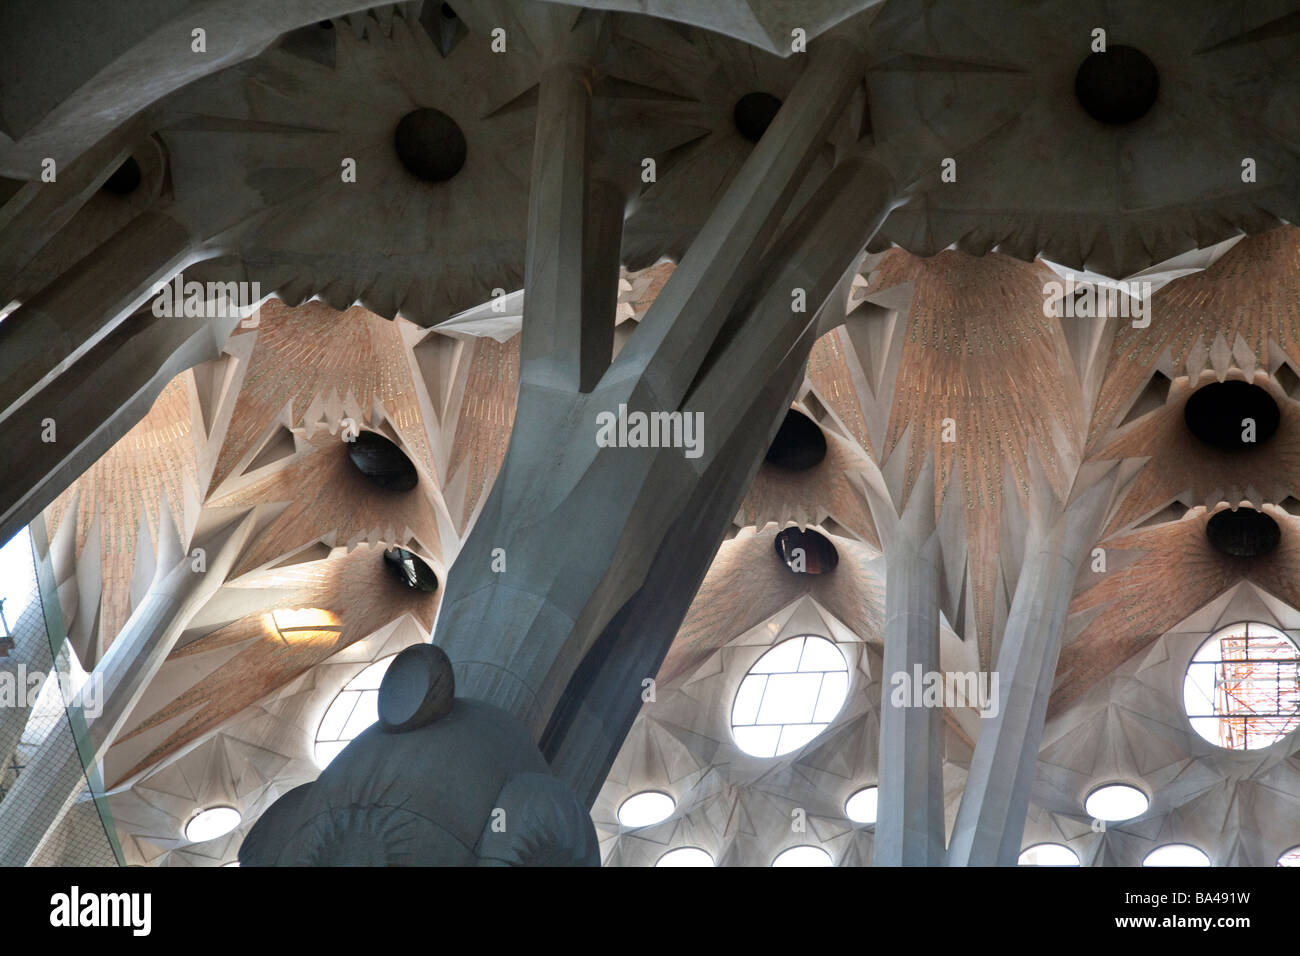 Détails architectoniques de l'église Sagrada Familia de Gaudi de Barcelone ville commnunity autonome de Catalogne nord-est de l'Espagne Banque D'Images